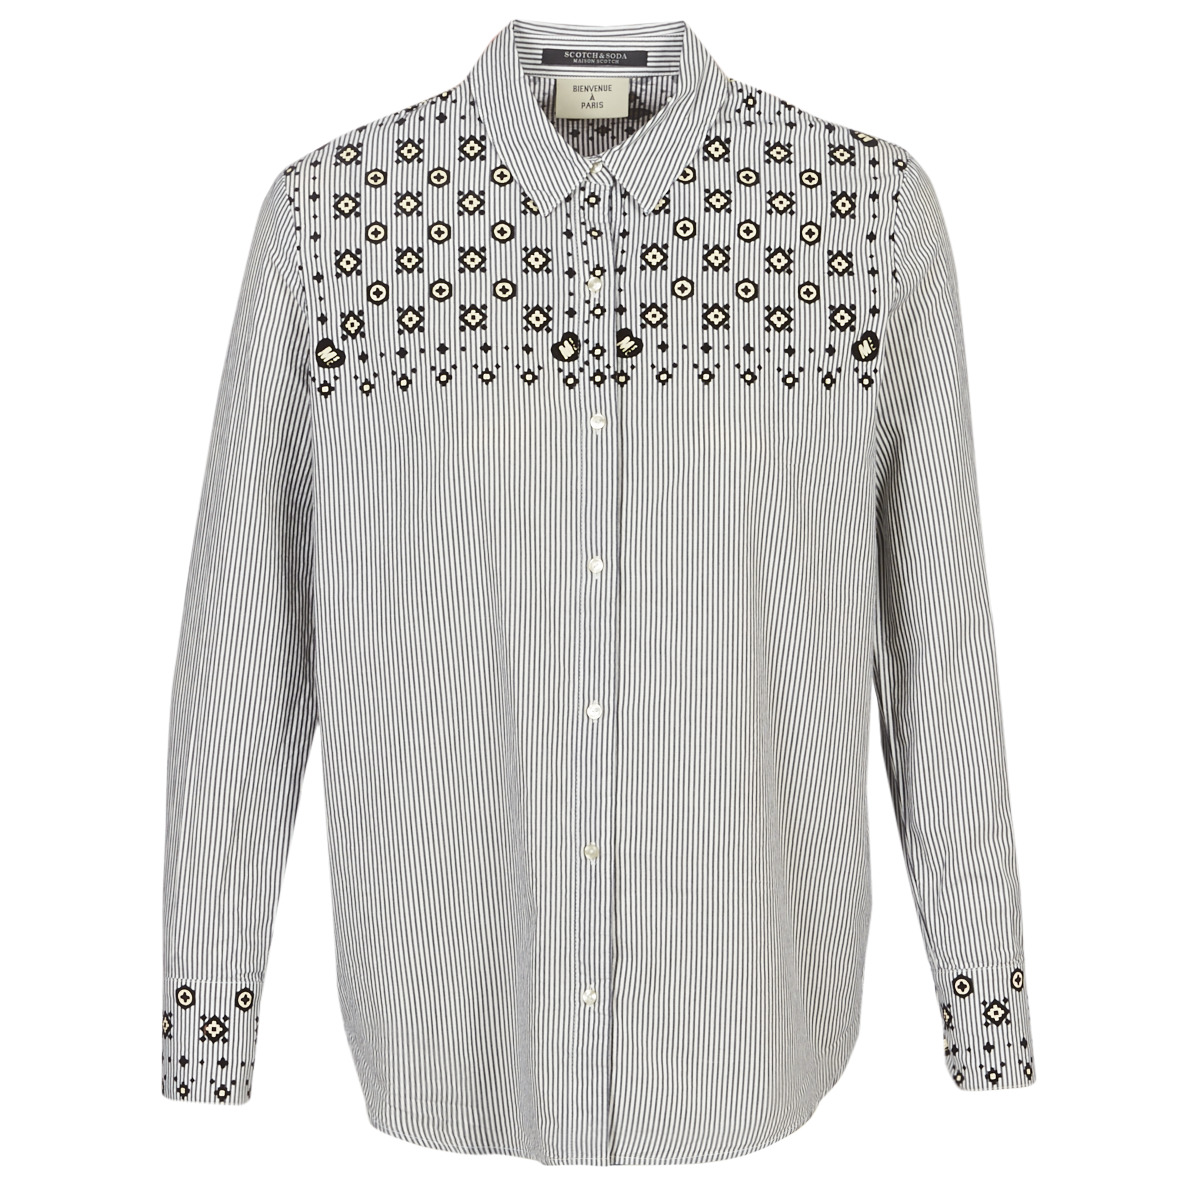 maison scotch  button up shirt with bandana print  women's shirt in grey